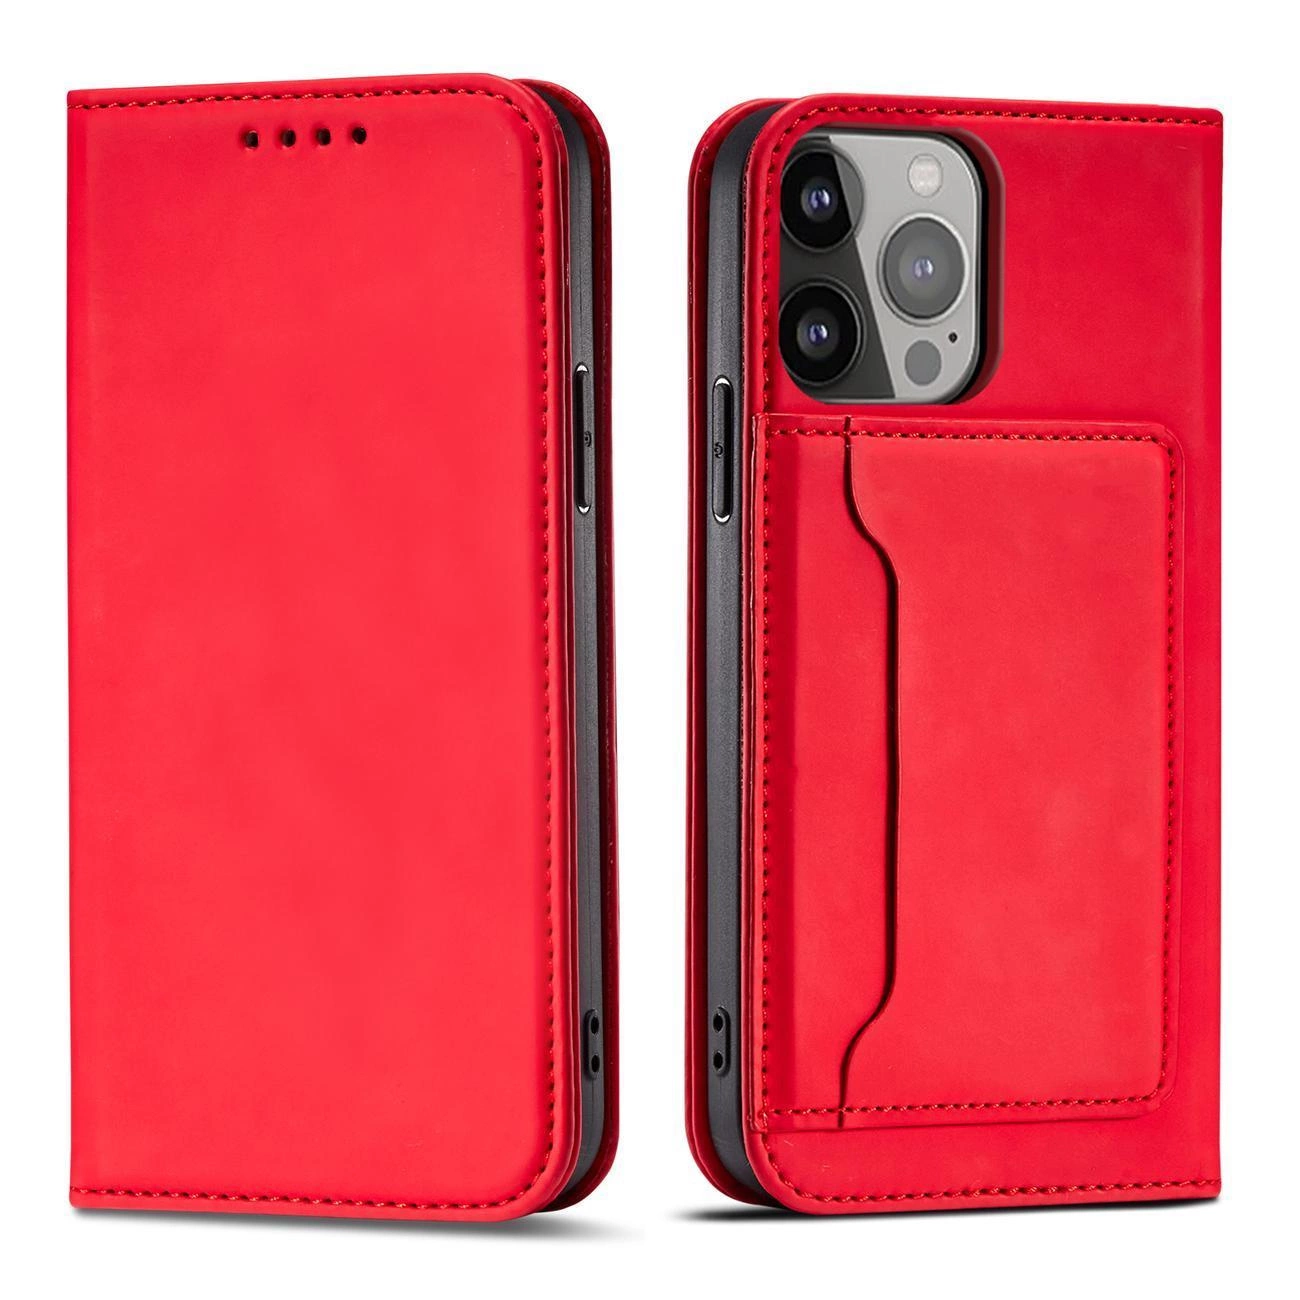 Hurtel Magnetové pouzdro na karty Samsung Galaxy S23 Ultra s klopou, peněženkou a stojánkem červené barvy